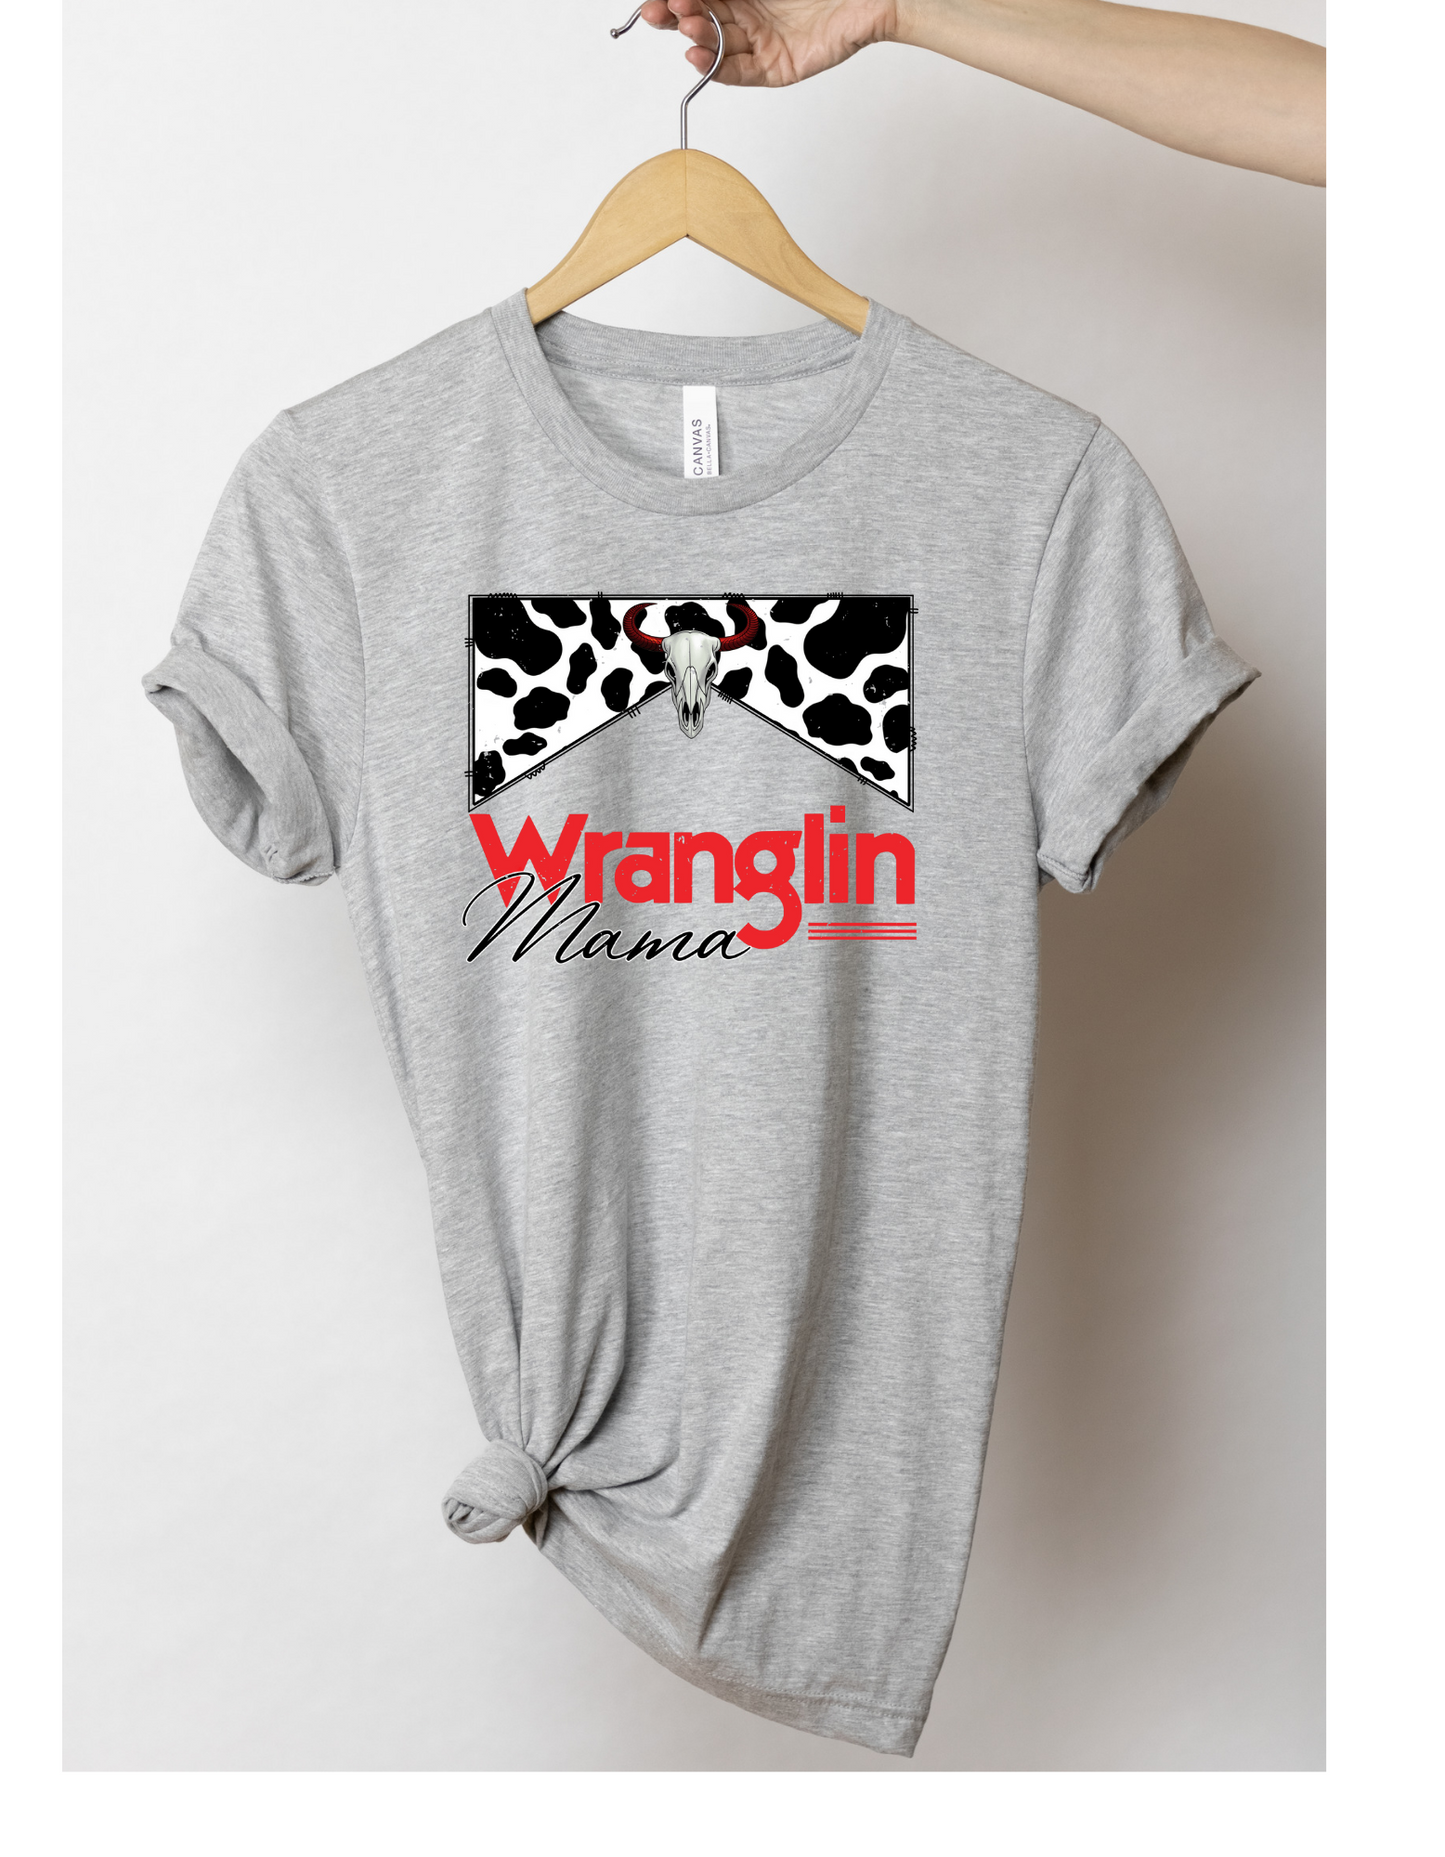 Wranglin mama t shirt - 4 little hearts